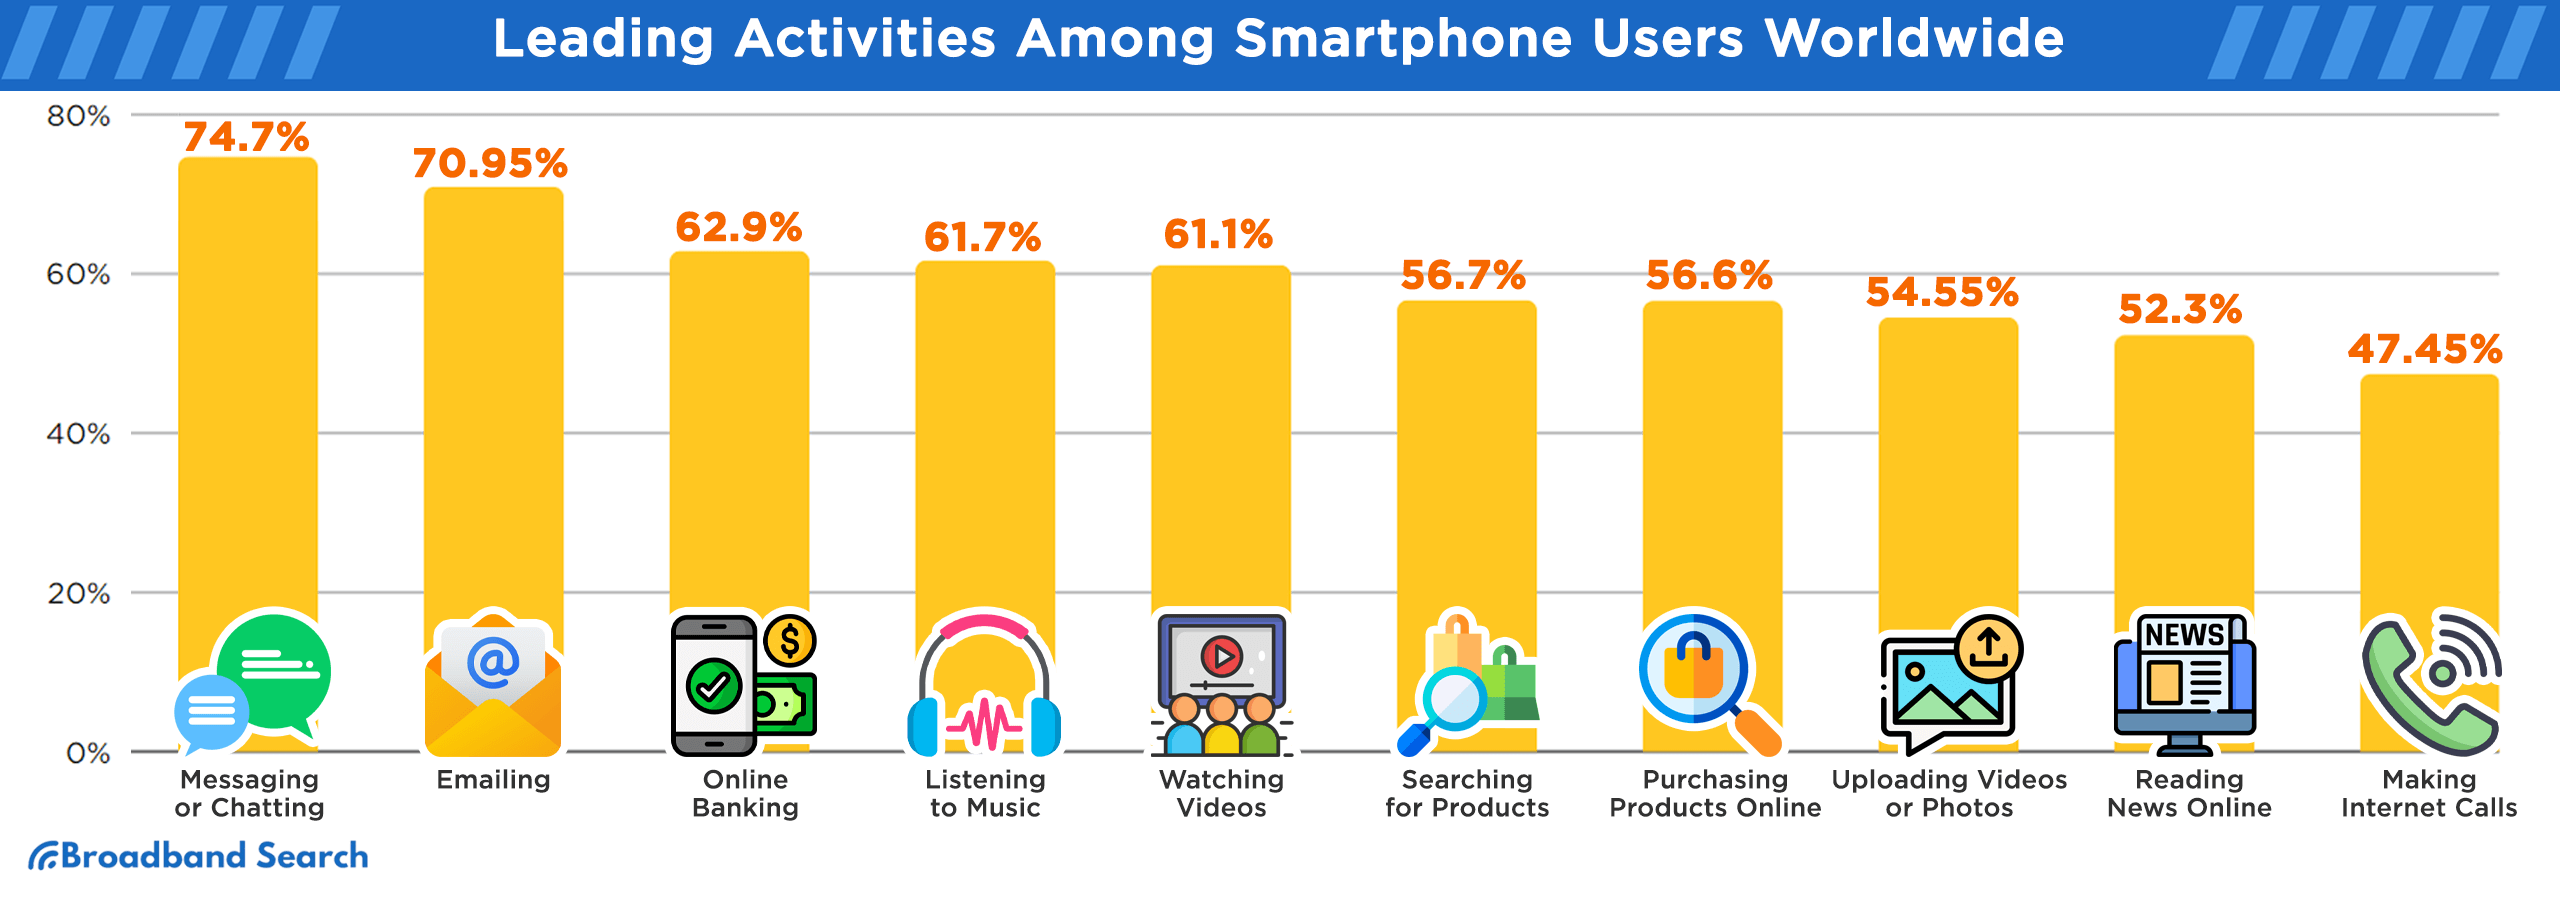 Leading activities among smartphone users worldwide